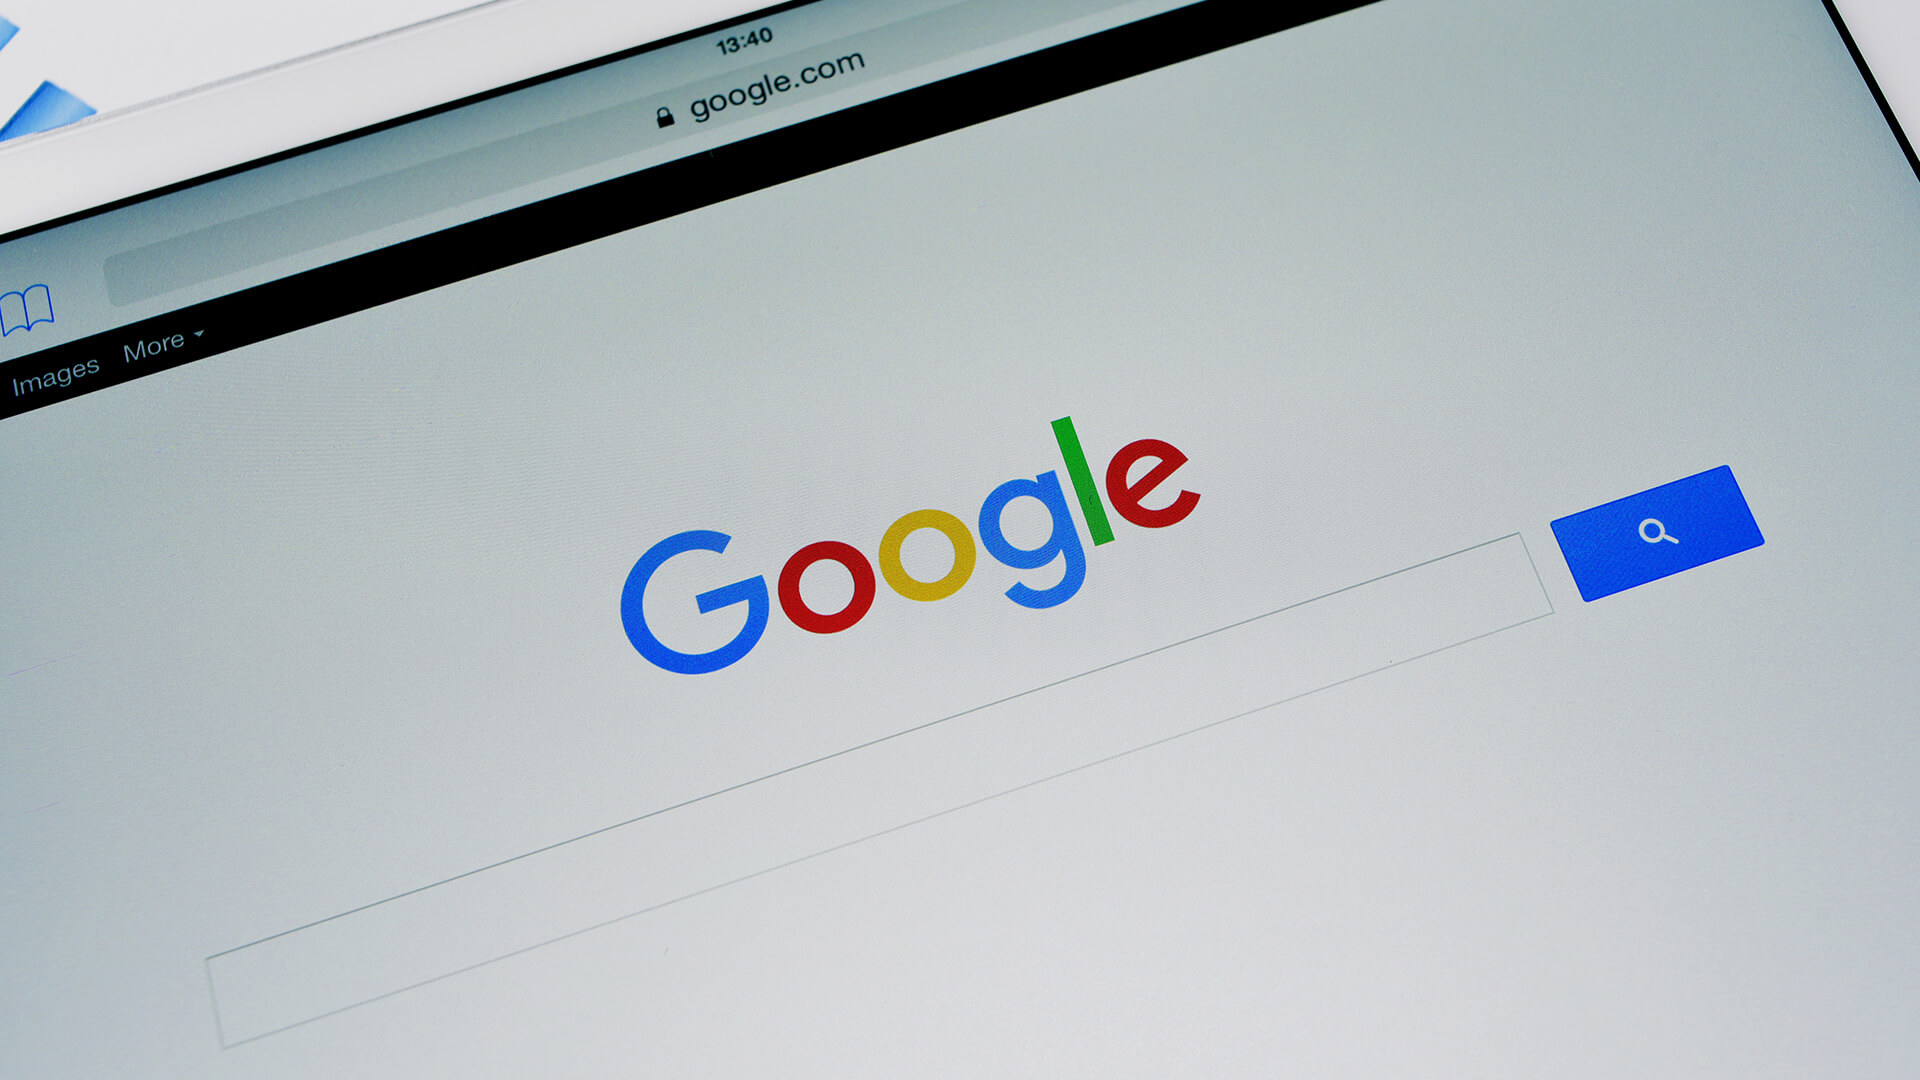 Τι έψαξαν οι Έλληνες το 2018 στην Google;